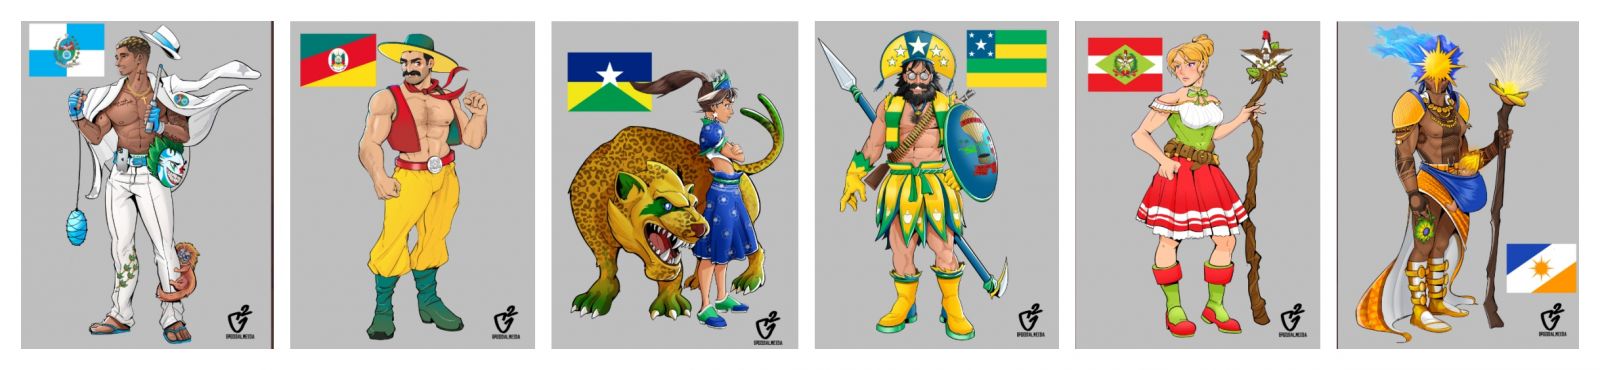 Rondônia e outros estados do país inspiram heróis e heroínas no estilo mangá - News Rondônia